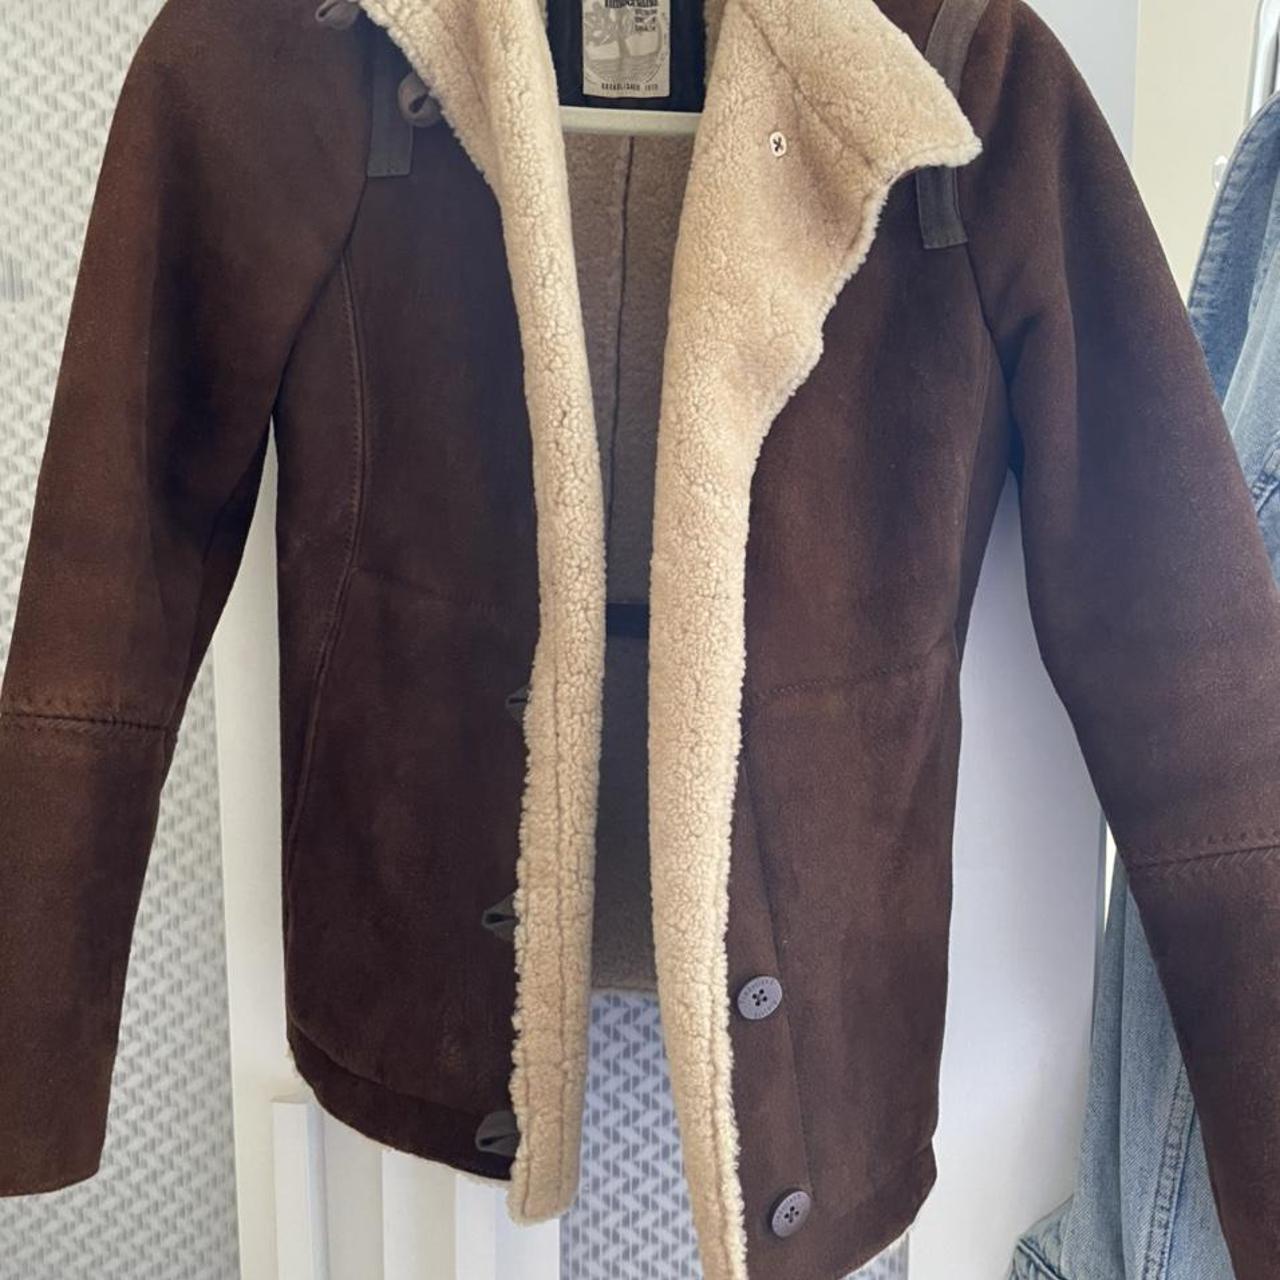 Vintage Timberland wool jacket 100% lambs wool... - Depop